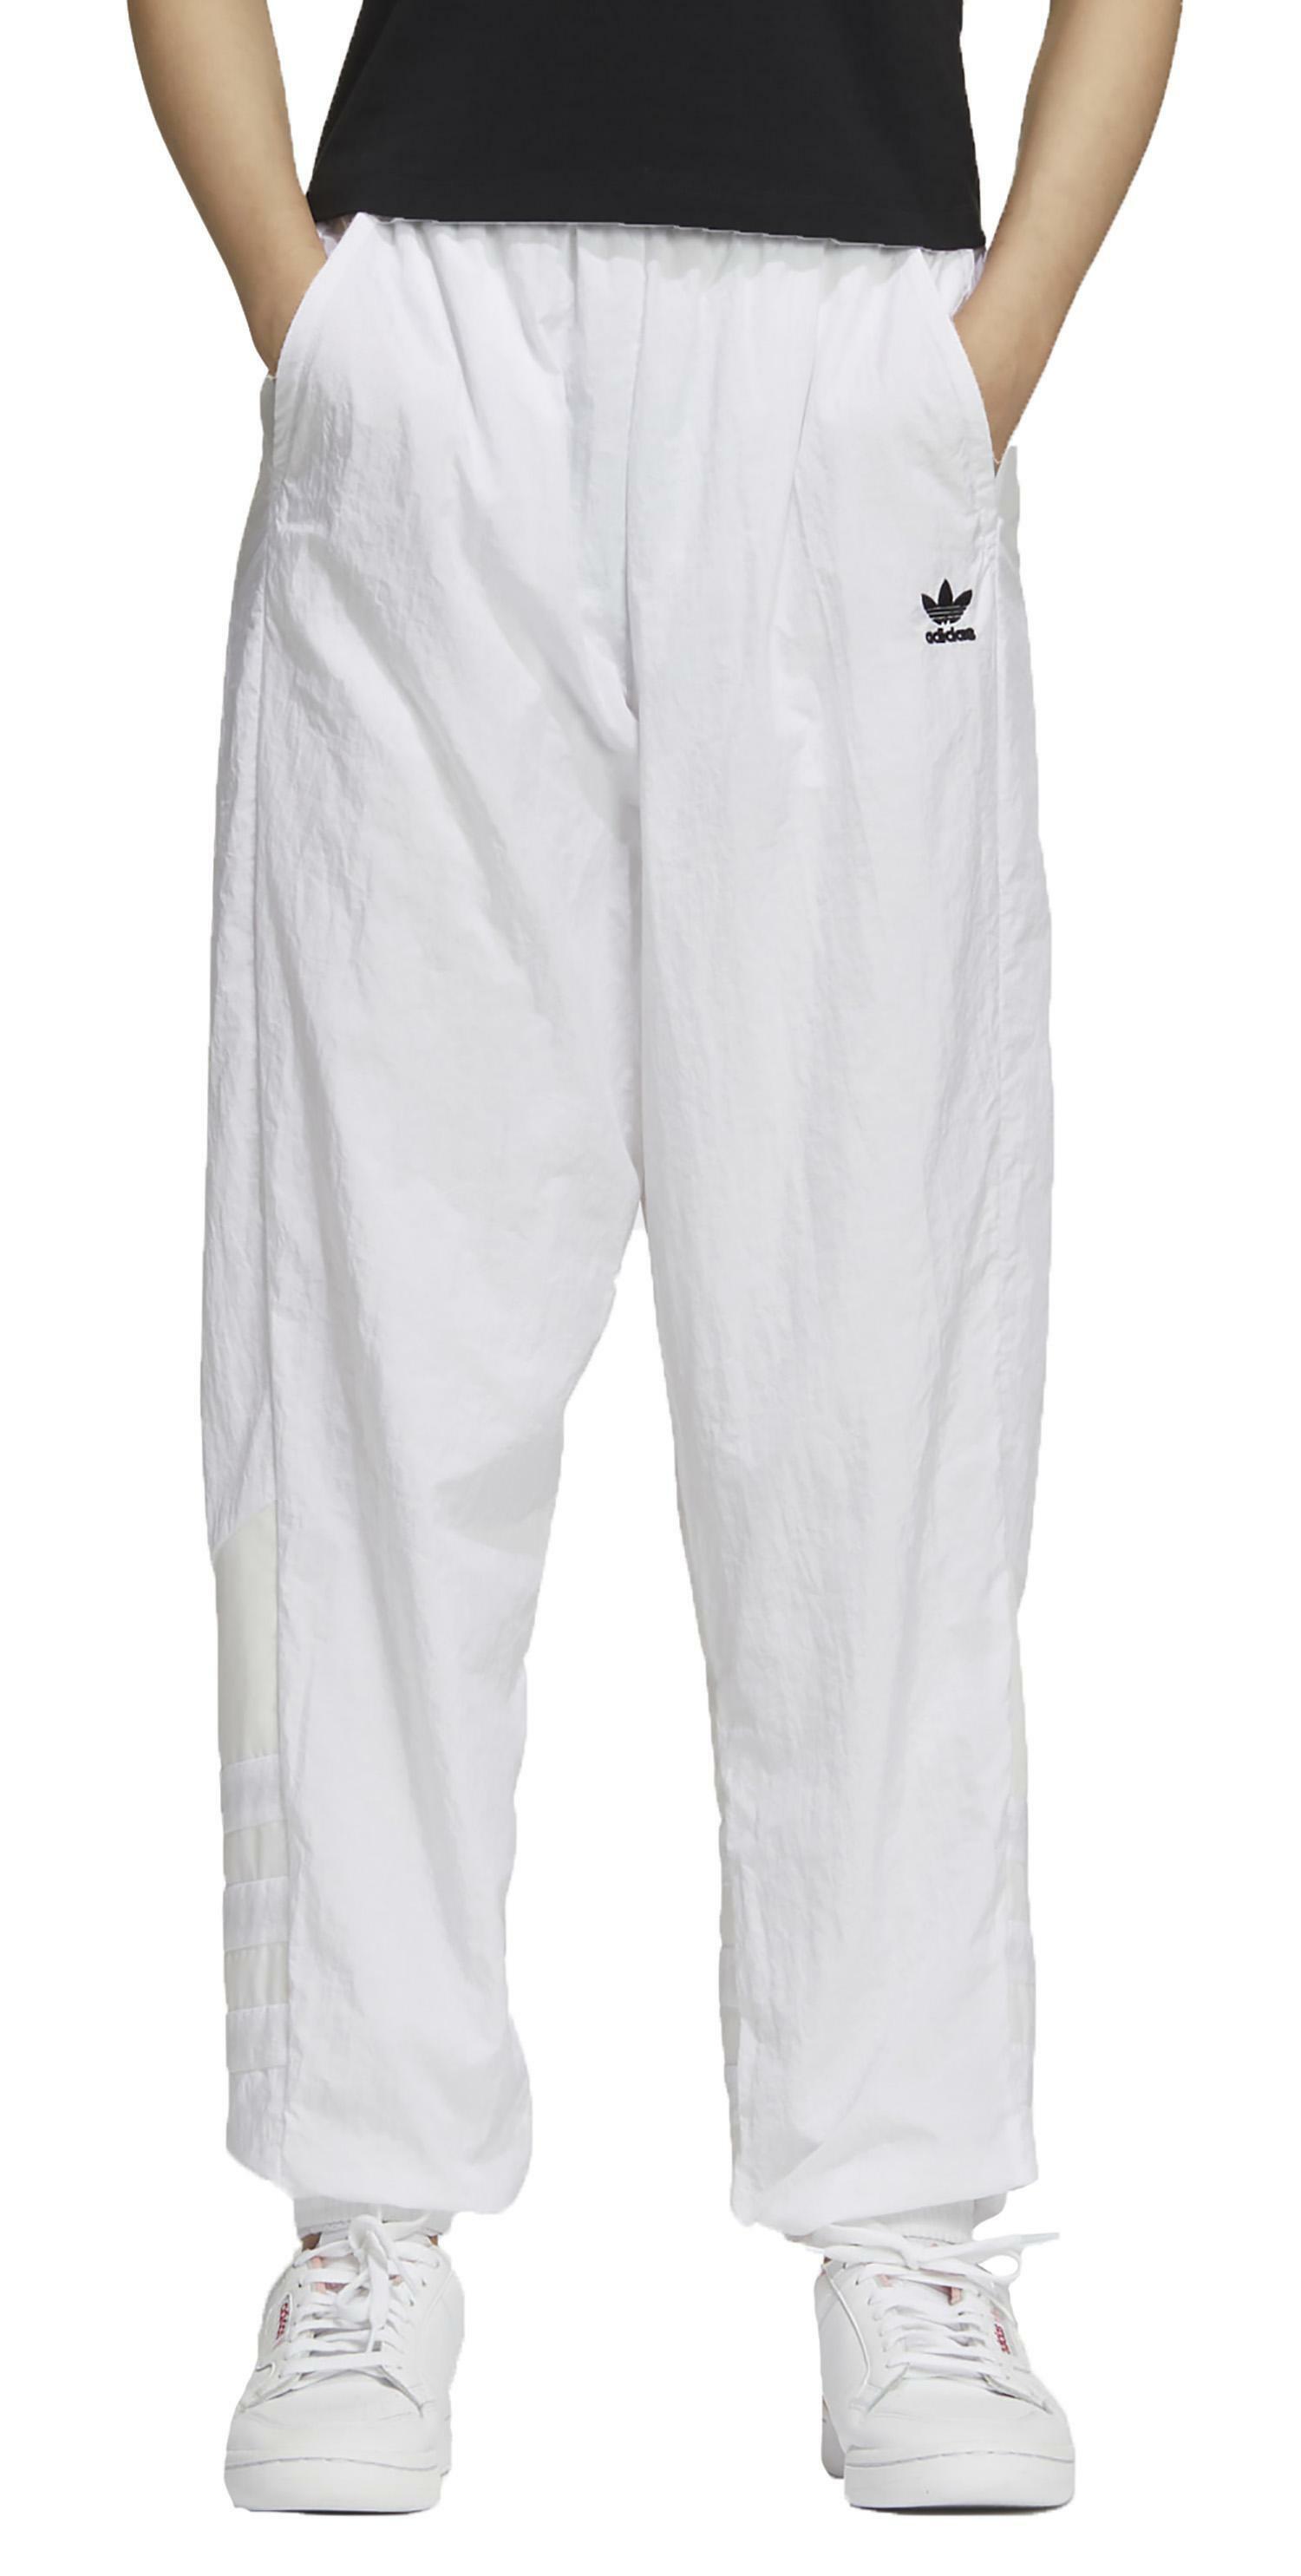 pantaloni adidas bianchi donna